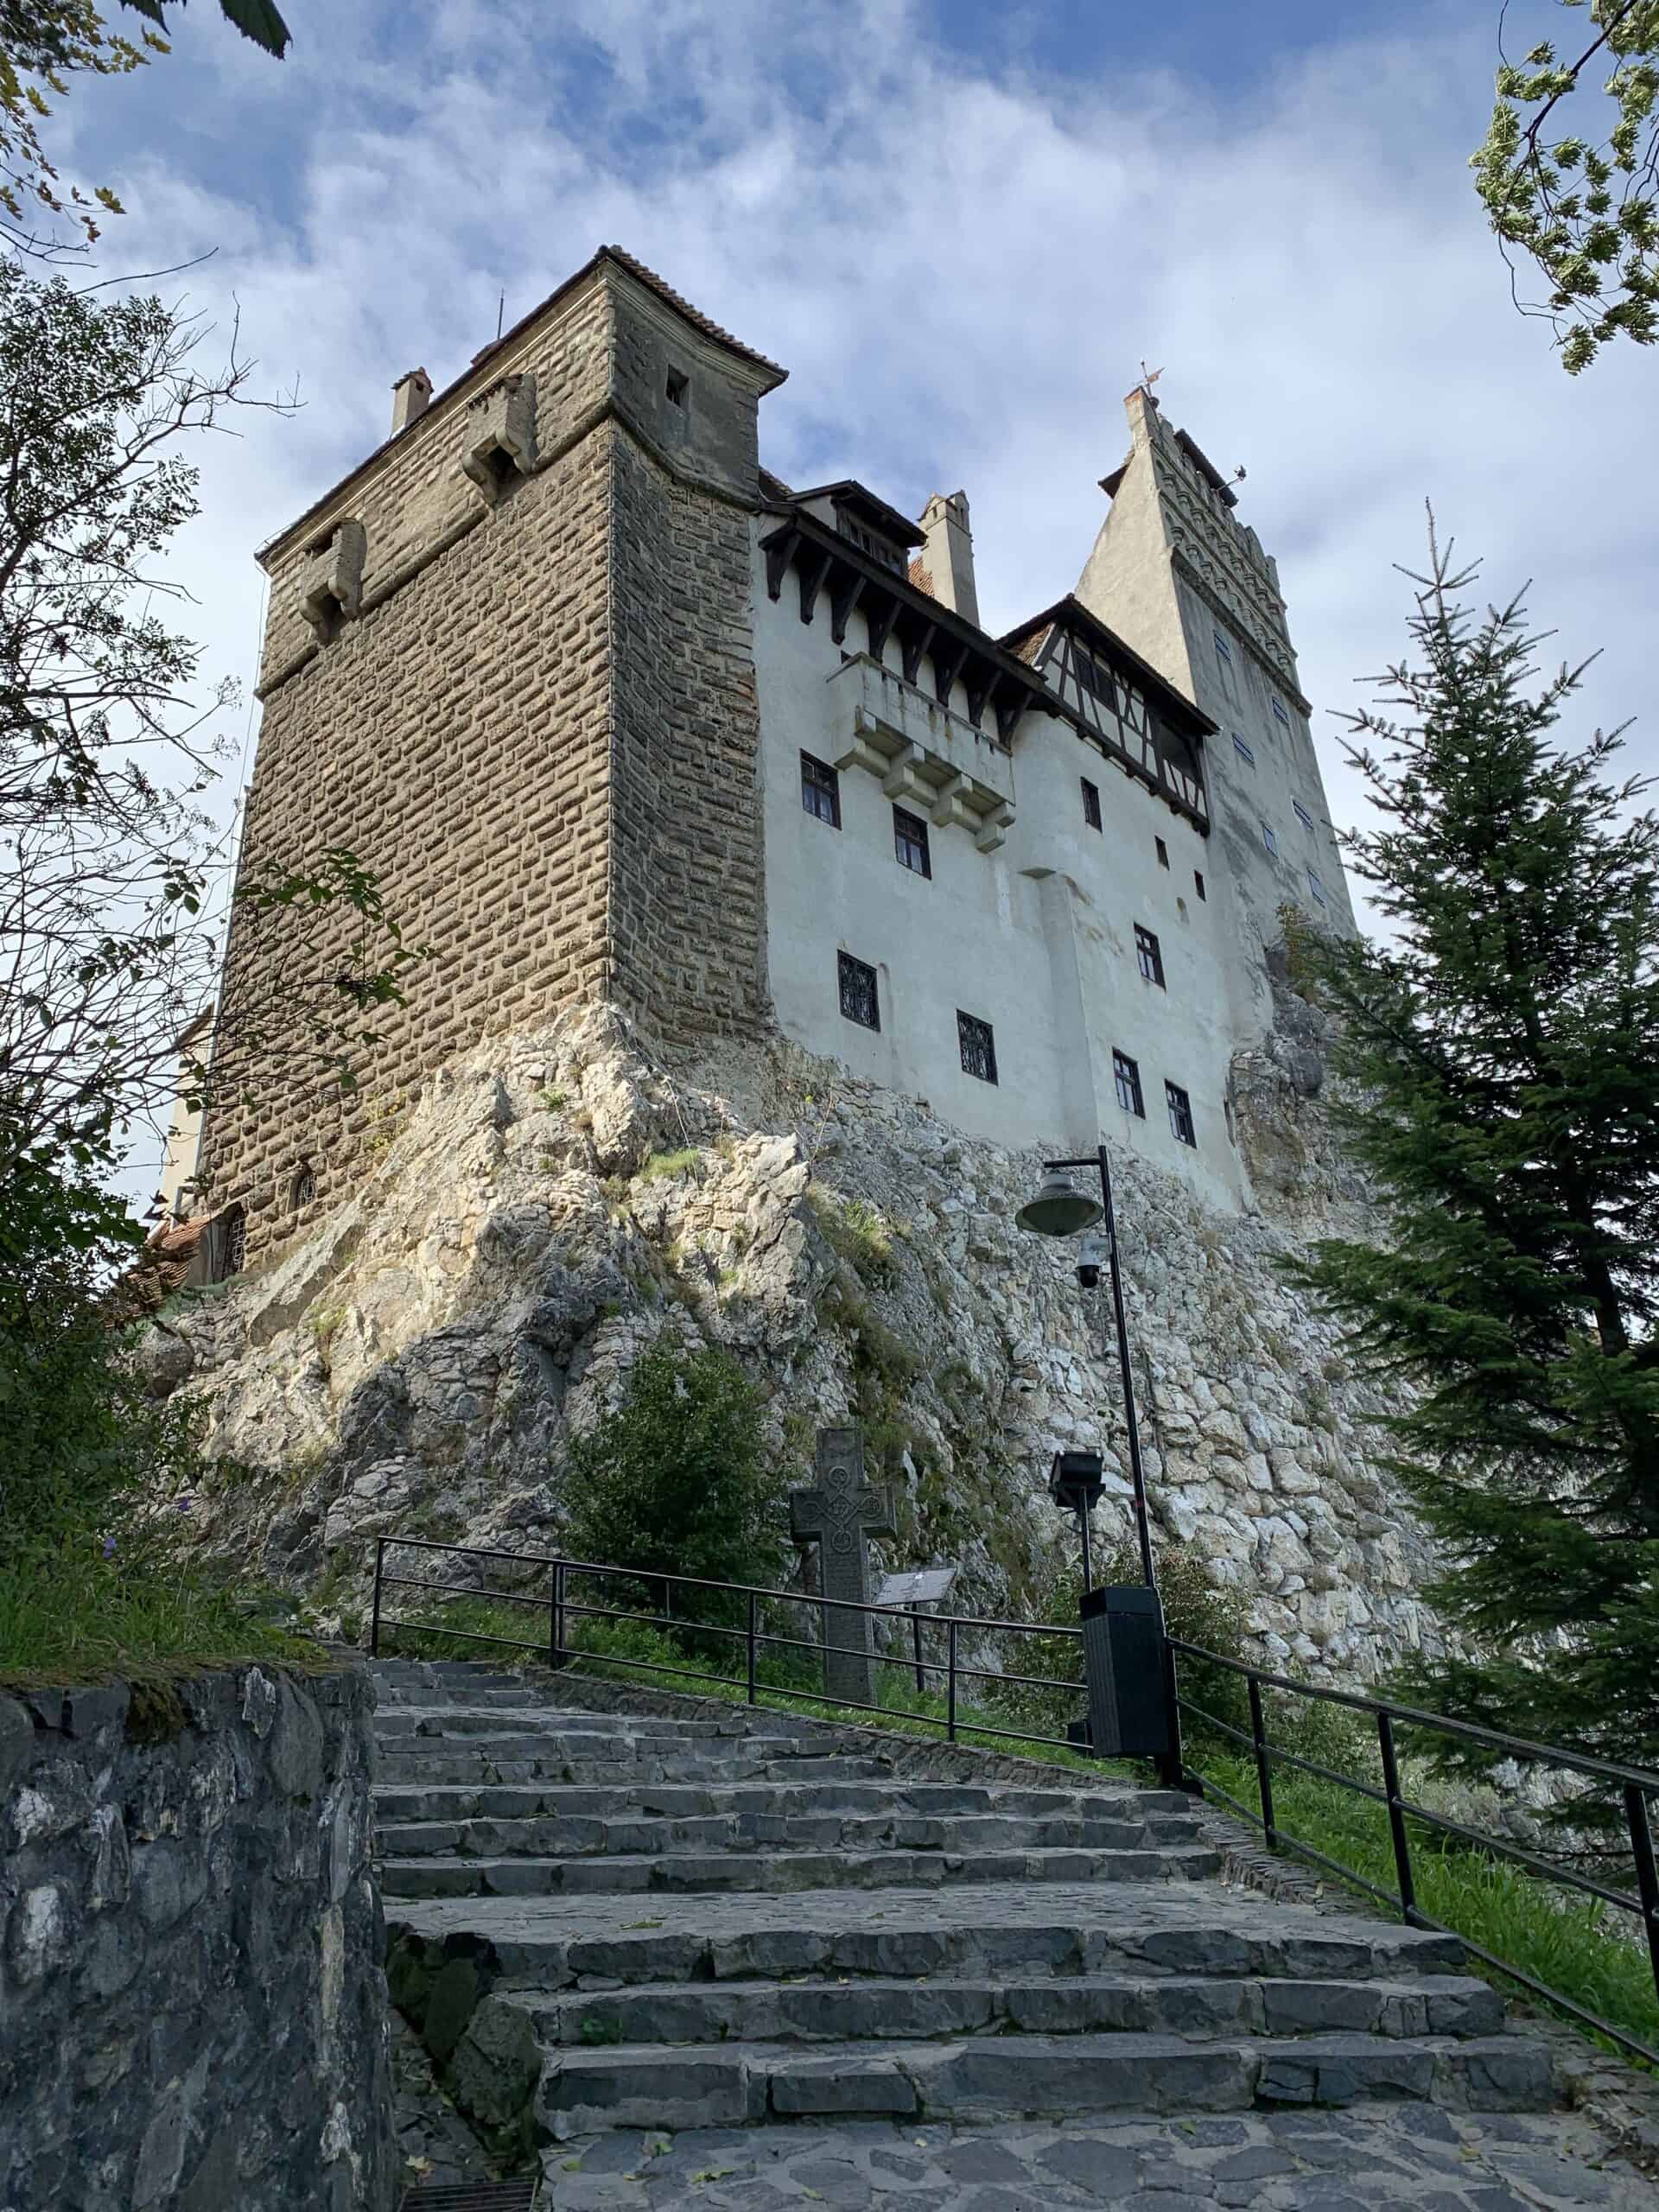 Castello di Bran (Castello di Dracula)